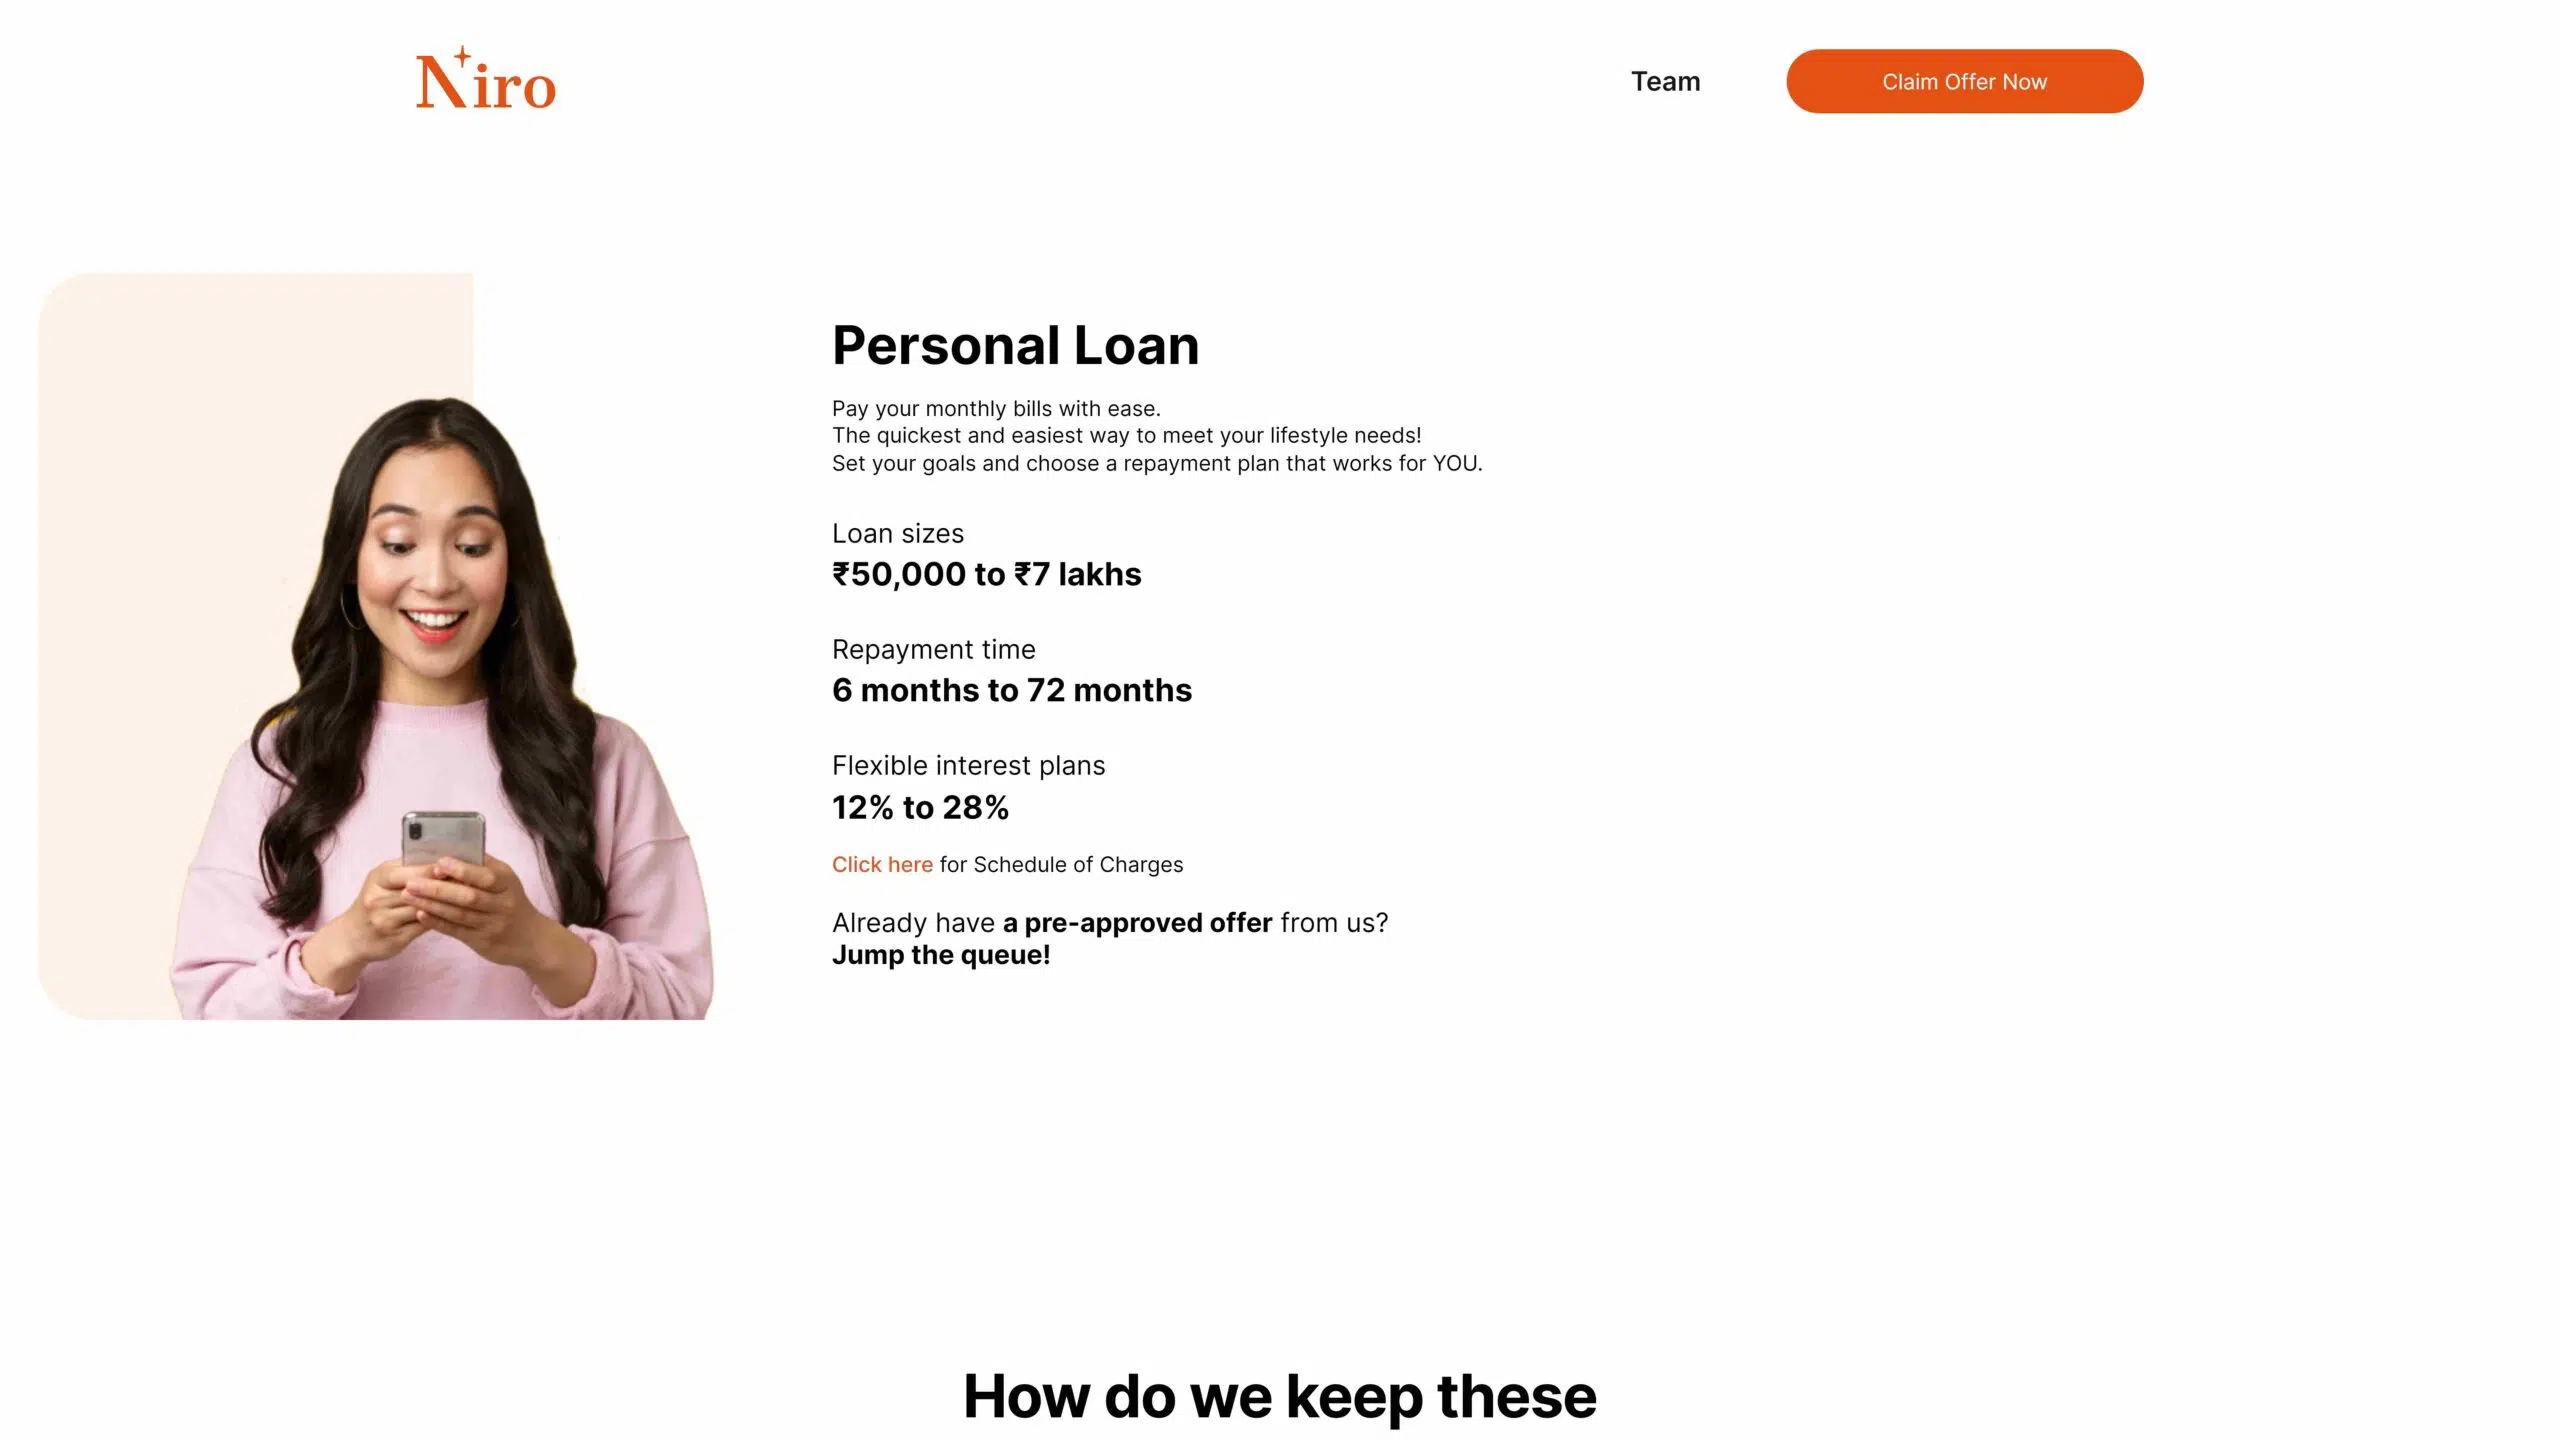 Niro loan app interest rate details